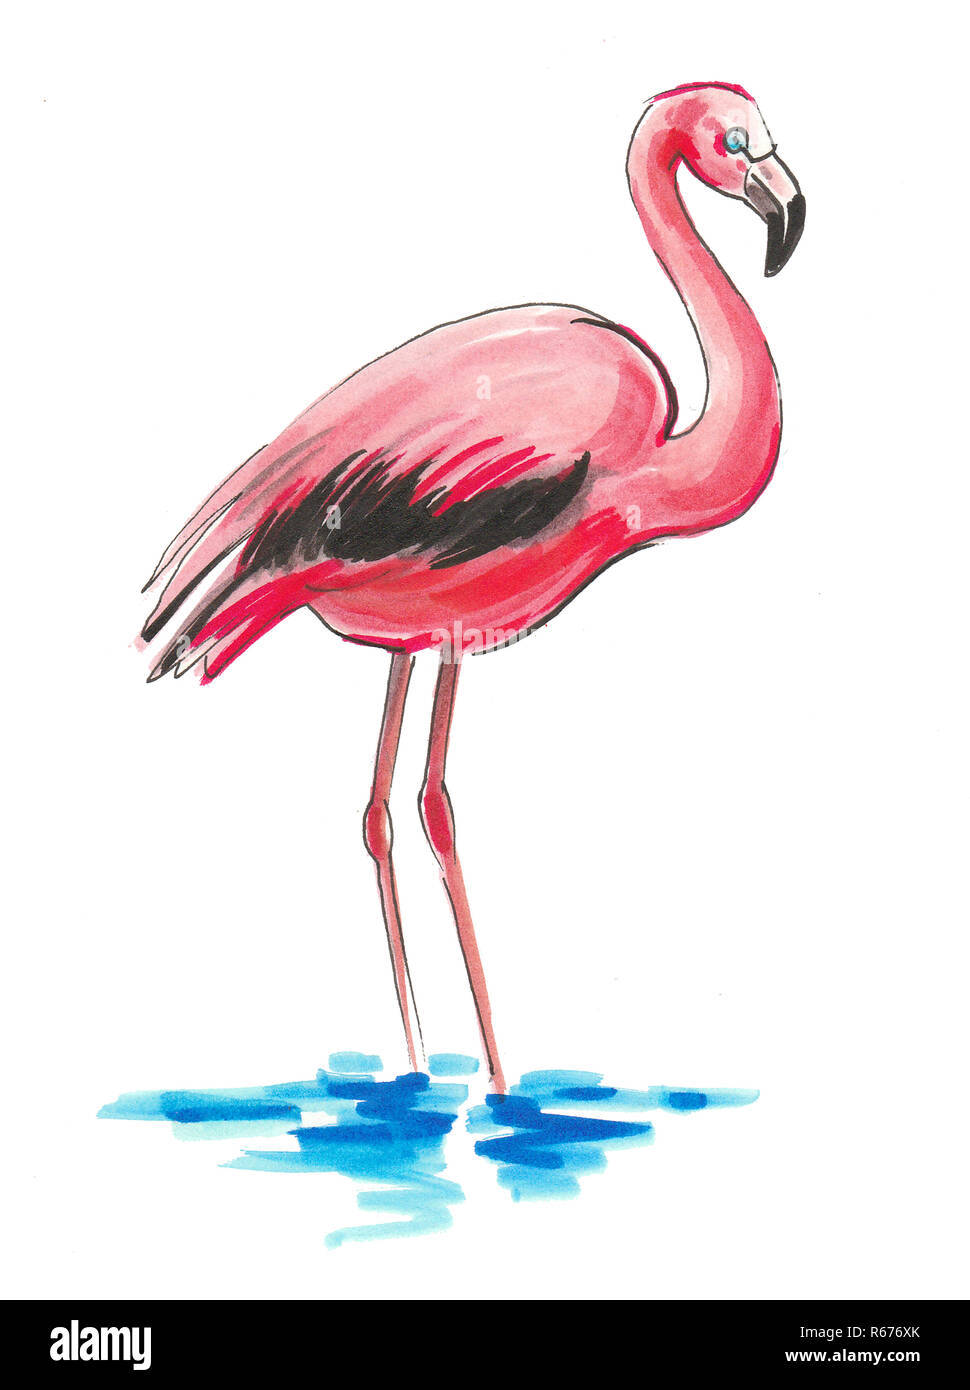 Rosa Flamingo Vogel stehen im Wasser. Tusche und Aquarell Abbildung  Stockfotografie - Alamy